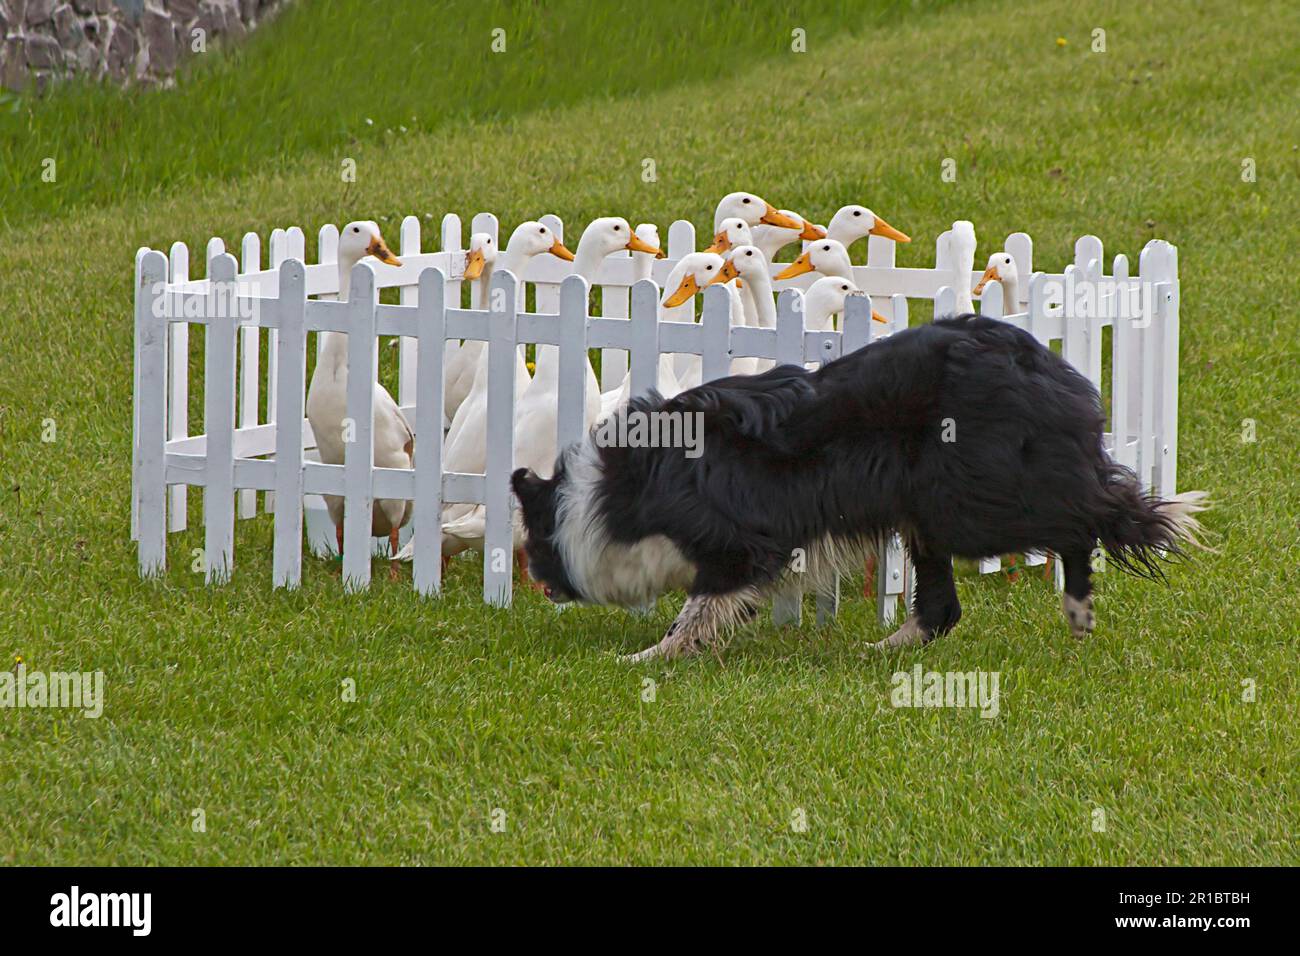 Canard domestique, canard indien, troupeau, conduit dans un petit stylo par le chien de berger de collie, Angleterre, Royaume-Uni Banque D'Images